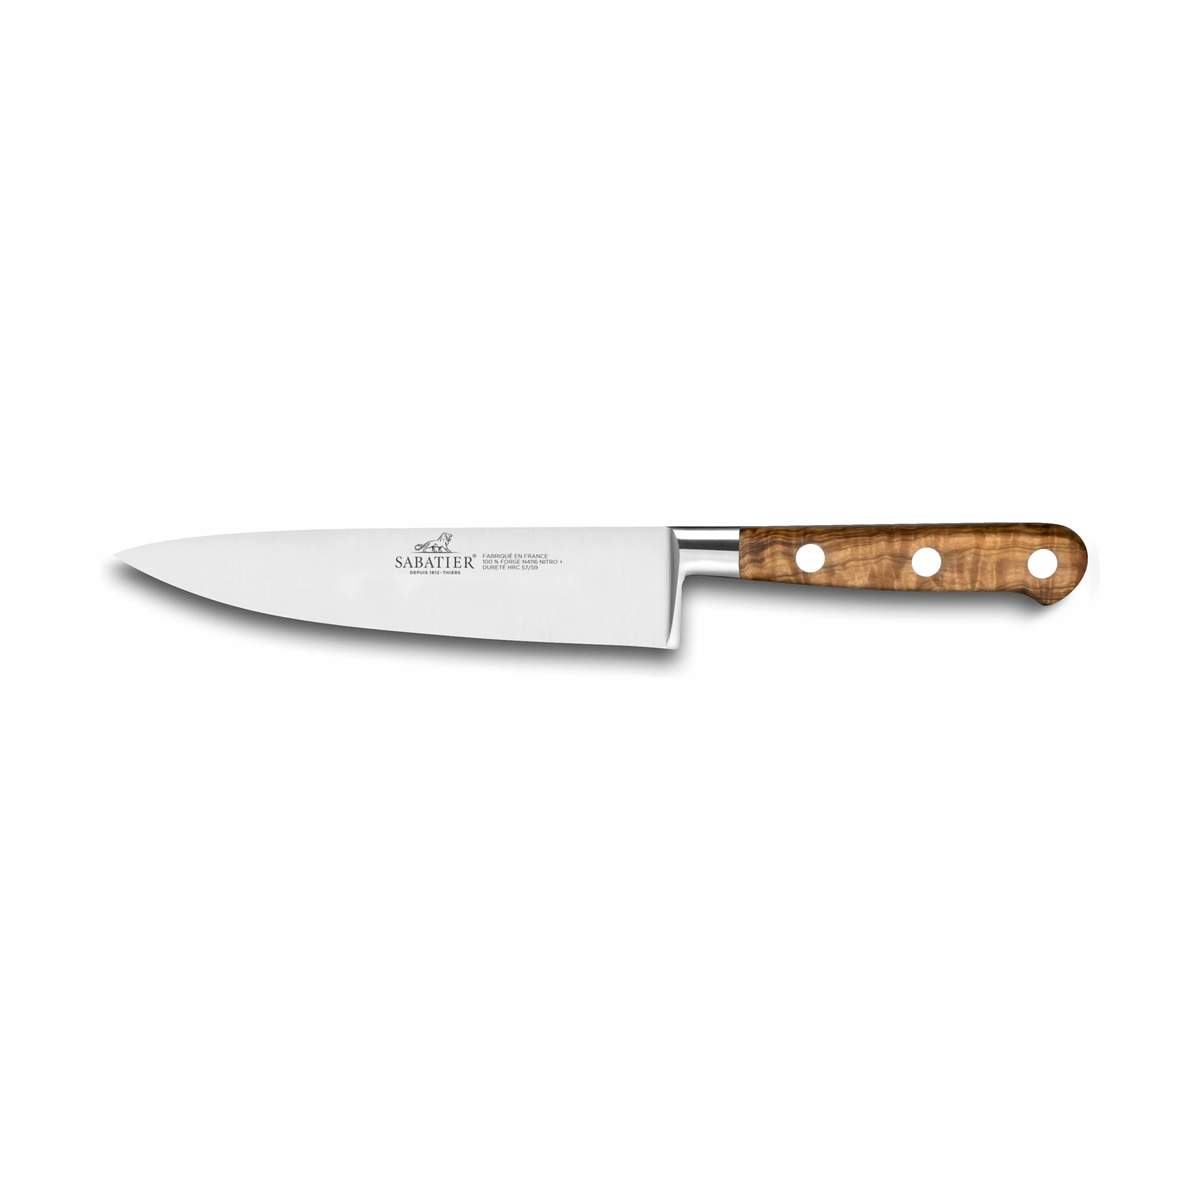 Lion Sabatier Ideal Provence knife series - Couteau - Lion Sabatier